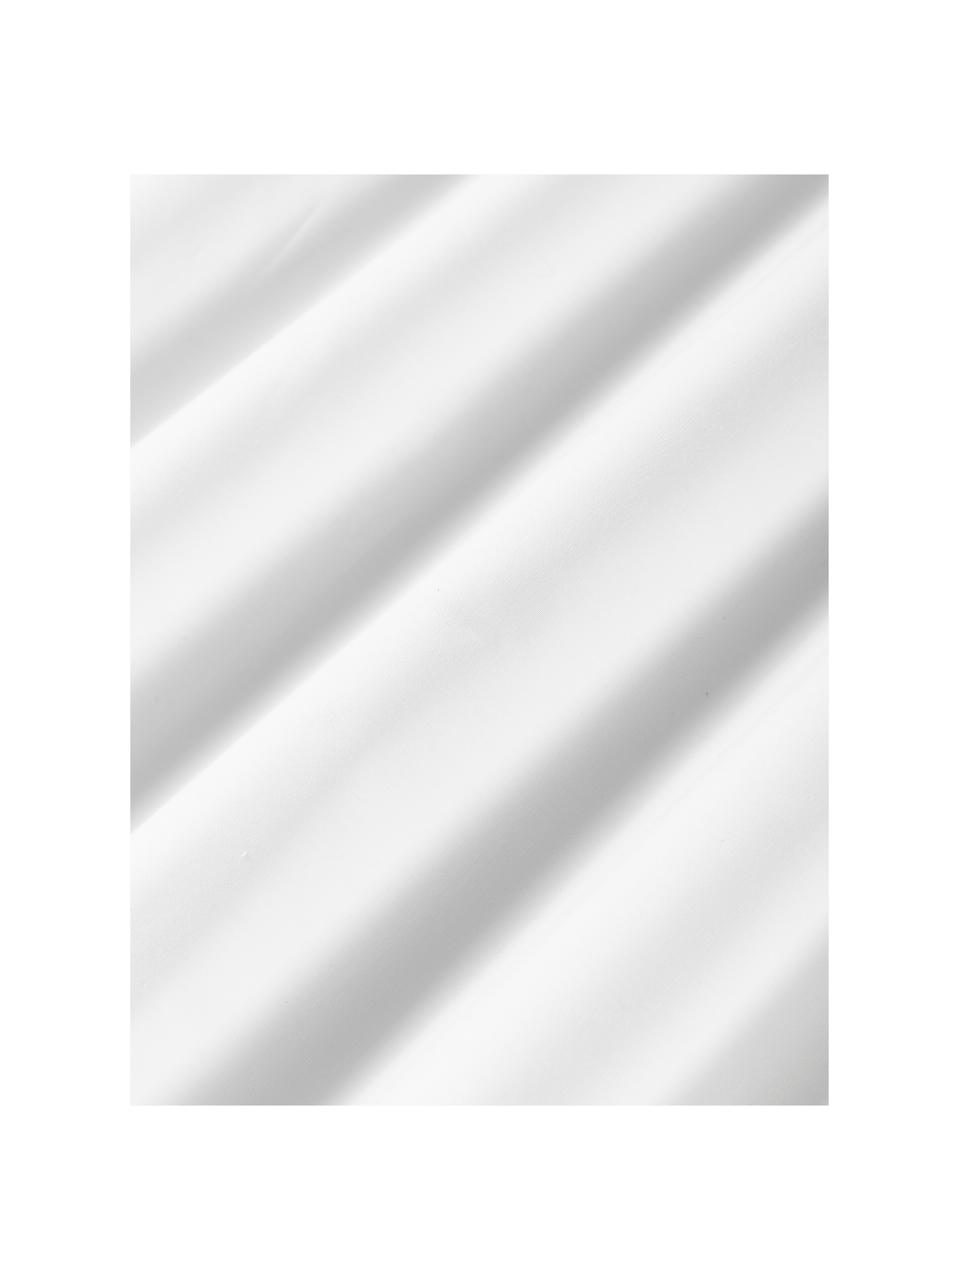 Federa in cotone percalle con cucitura in rilievo ondulata Atina, Bianco, rosso, Larg. 50 x Lung. 80 cm